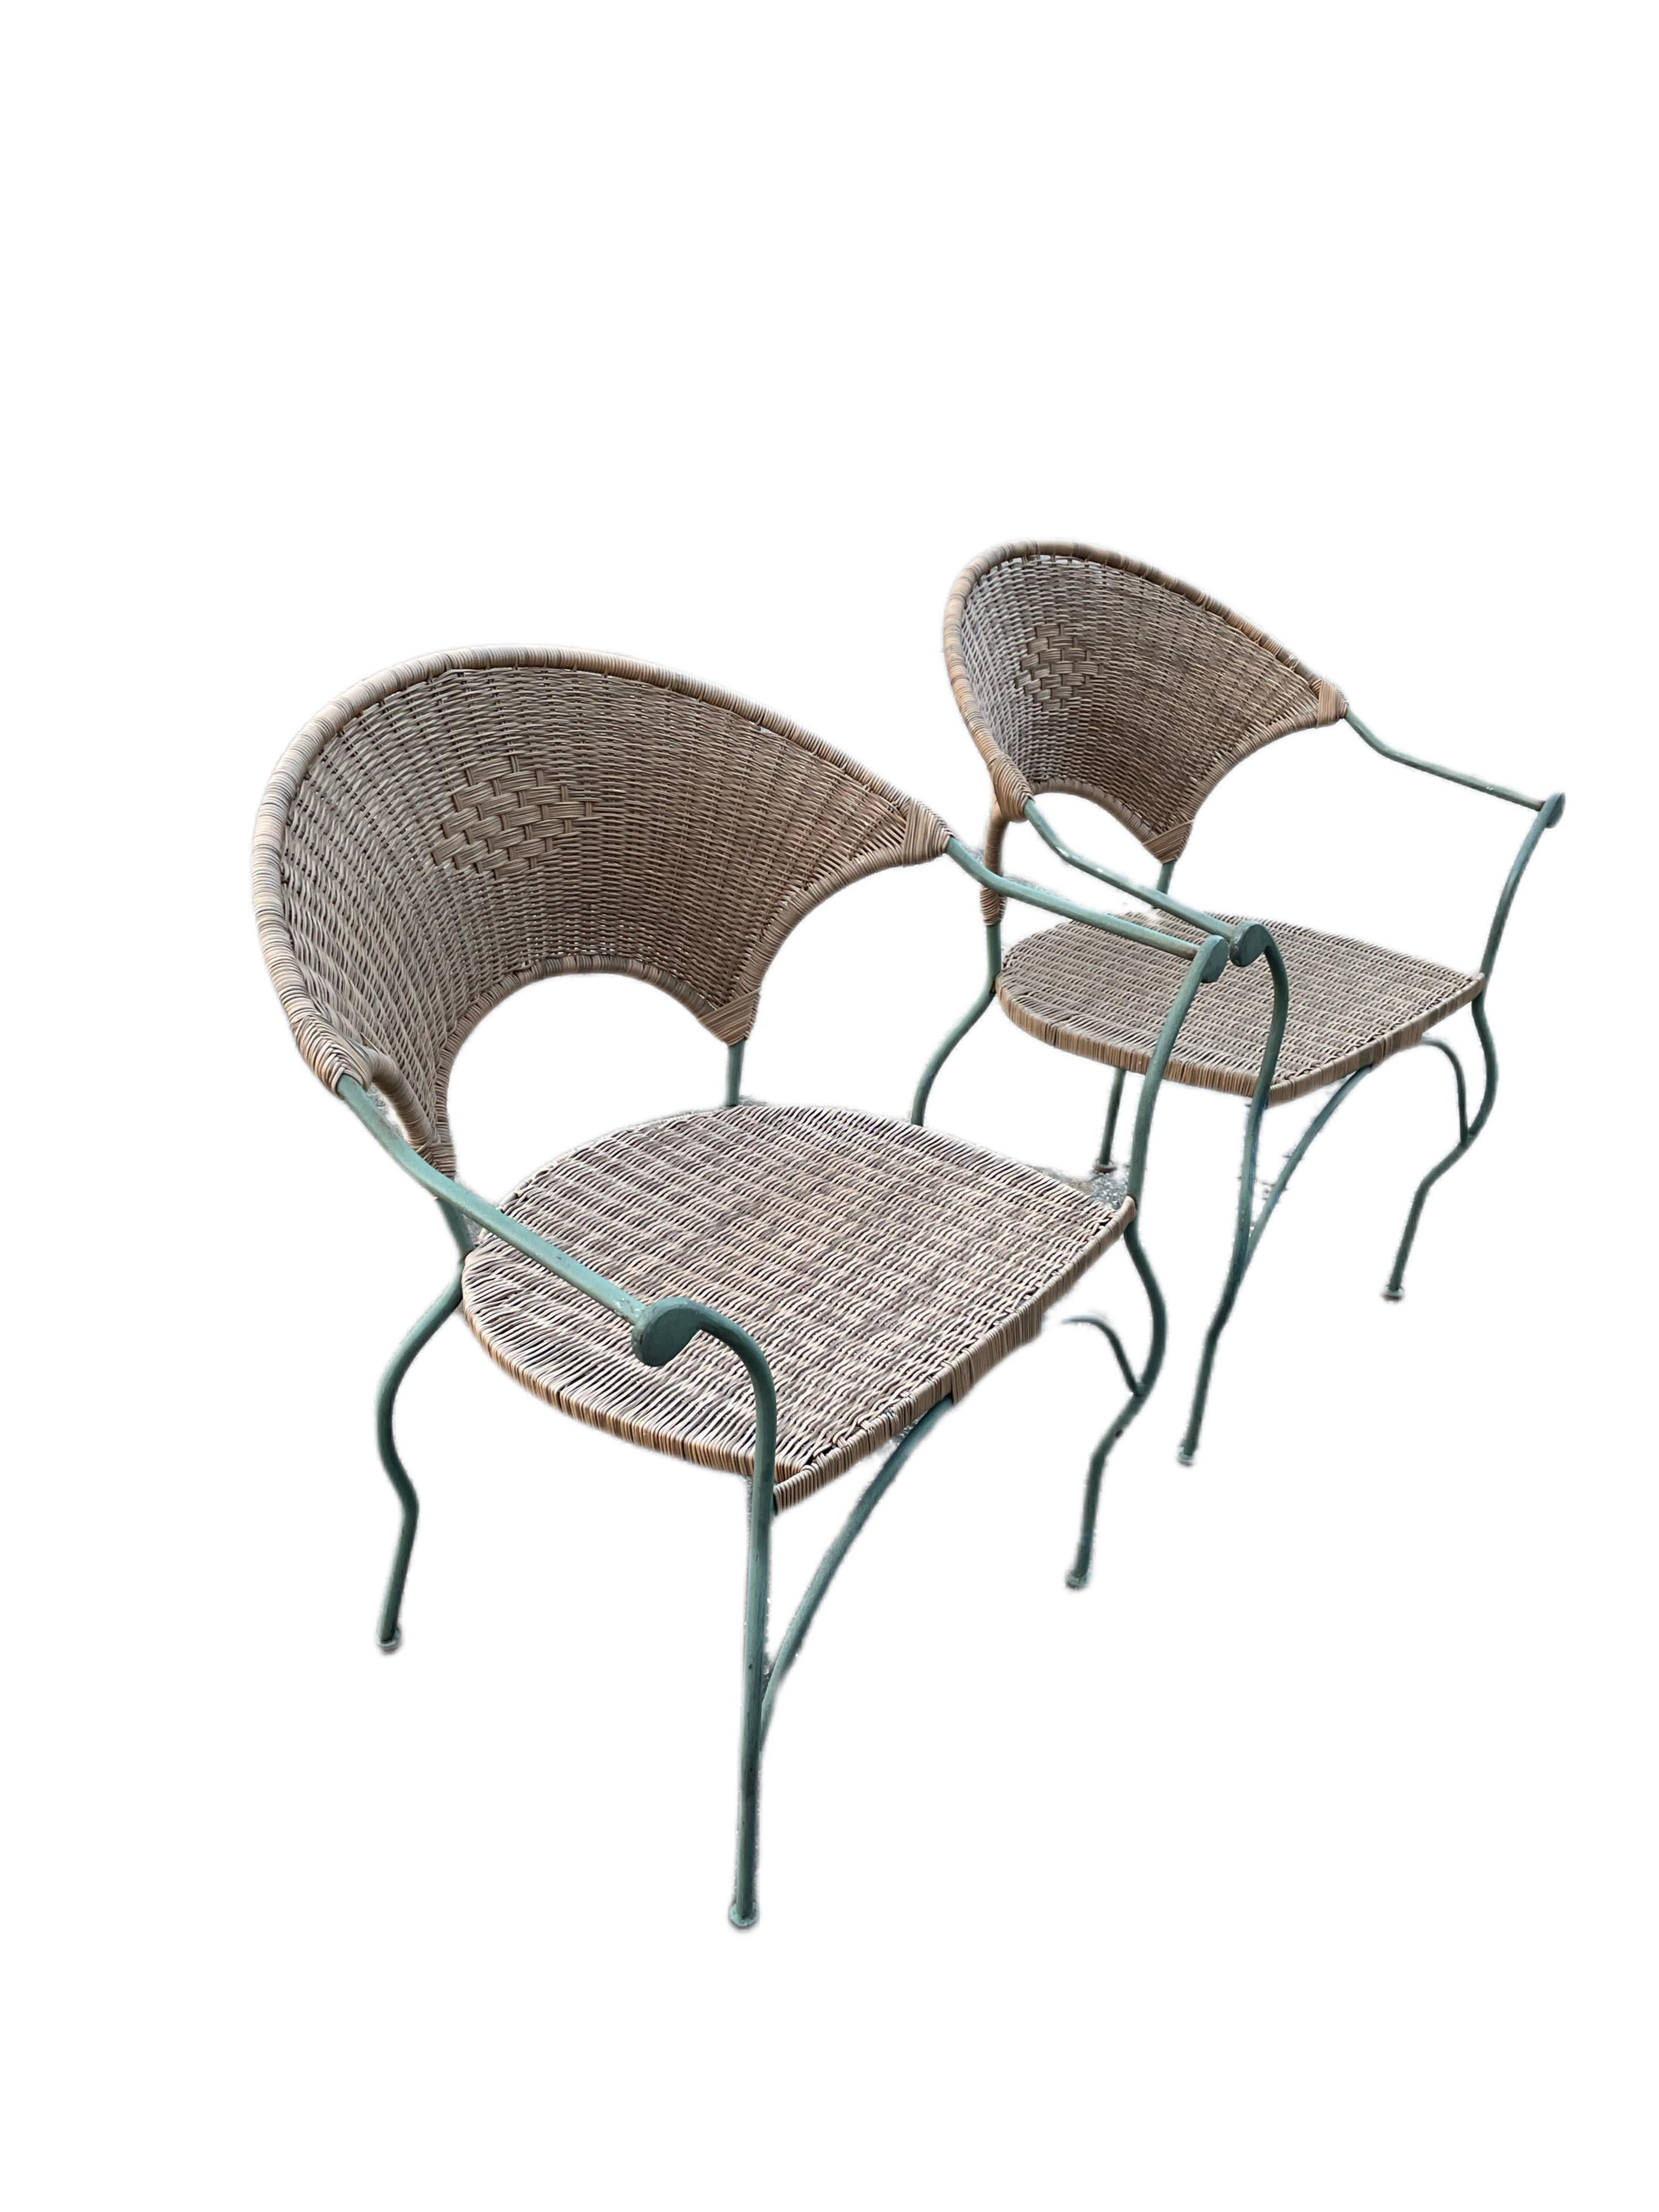 Verfügbar jetzt für Ihren Genuss und bereit zu versenden ist ein Paar Vintage Wrought Iron Patio Lounge Chair mit Wicker Sitzen und Rückenlehnen.

Dieses schöne schmiedeeiserne Set aus 6 Stühlen ist die perfekte Ergänzung für jeden Garten, jede